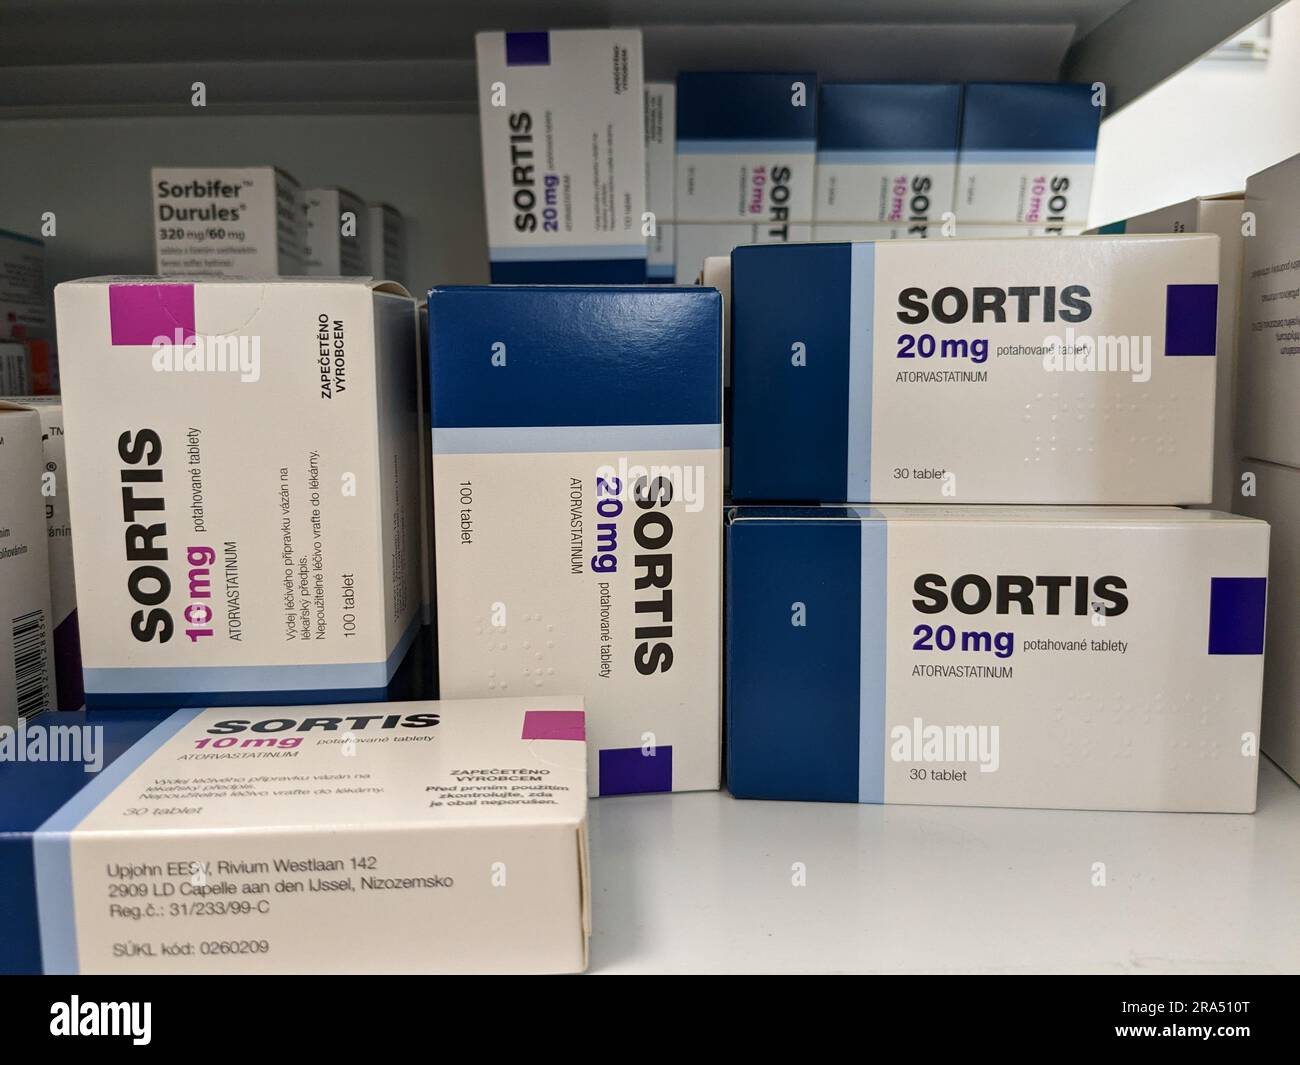 Magasin de pharmacie-Atorvastatin, boîte de sortis comprimés-Pfizer.Atorvastatin cholestérol comprimés préventifs-statines sont utilisés pour traiter l'hypercholestérolémie Banque D'Images